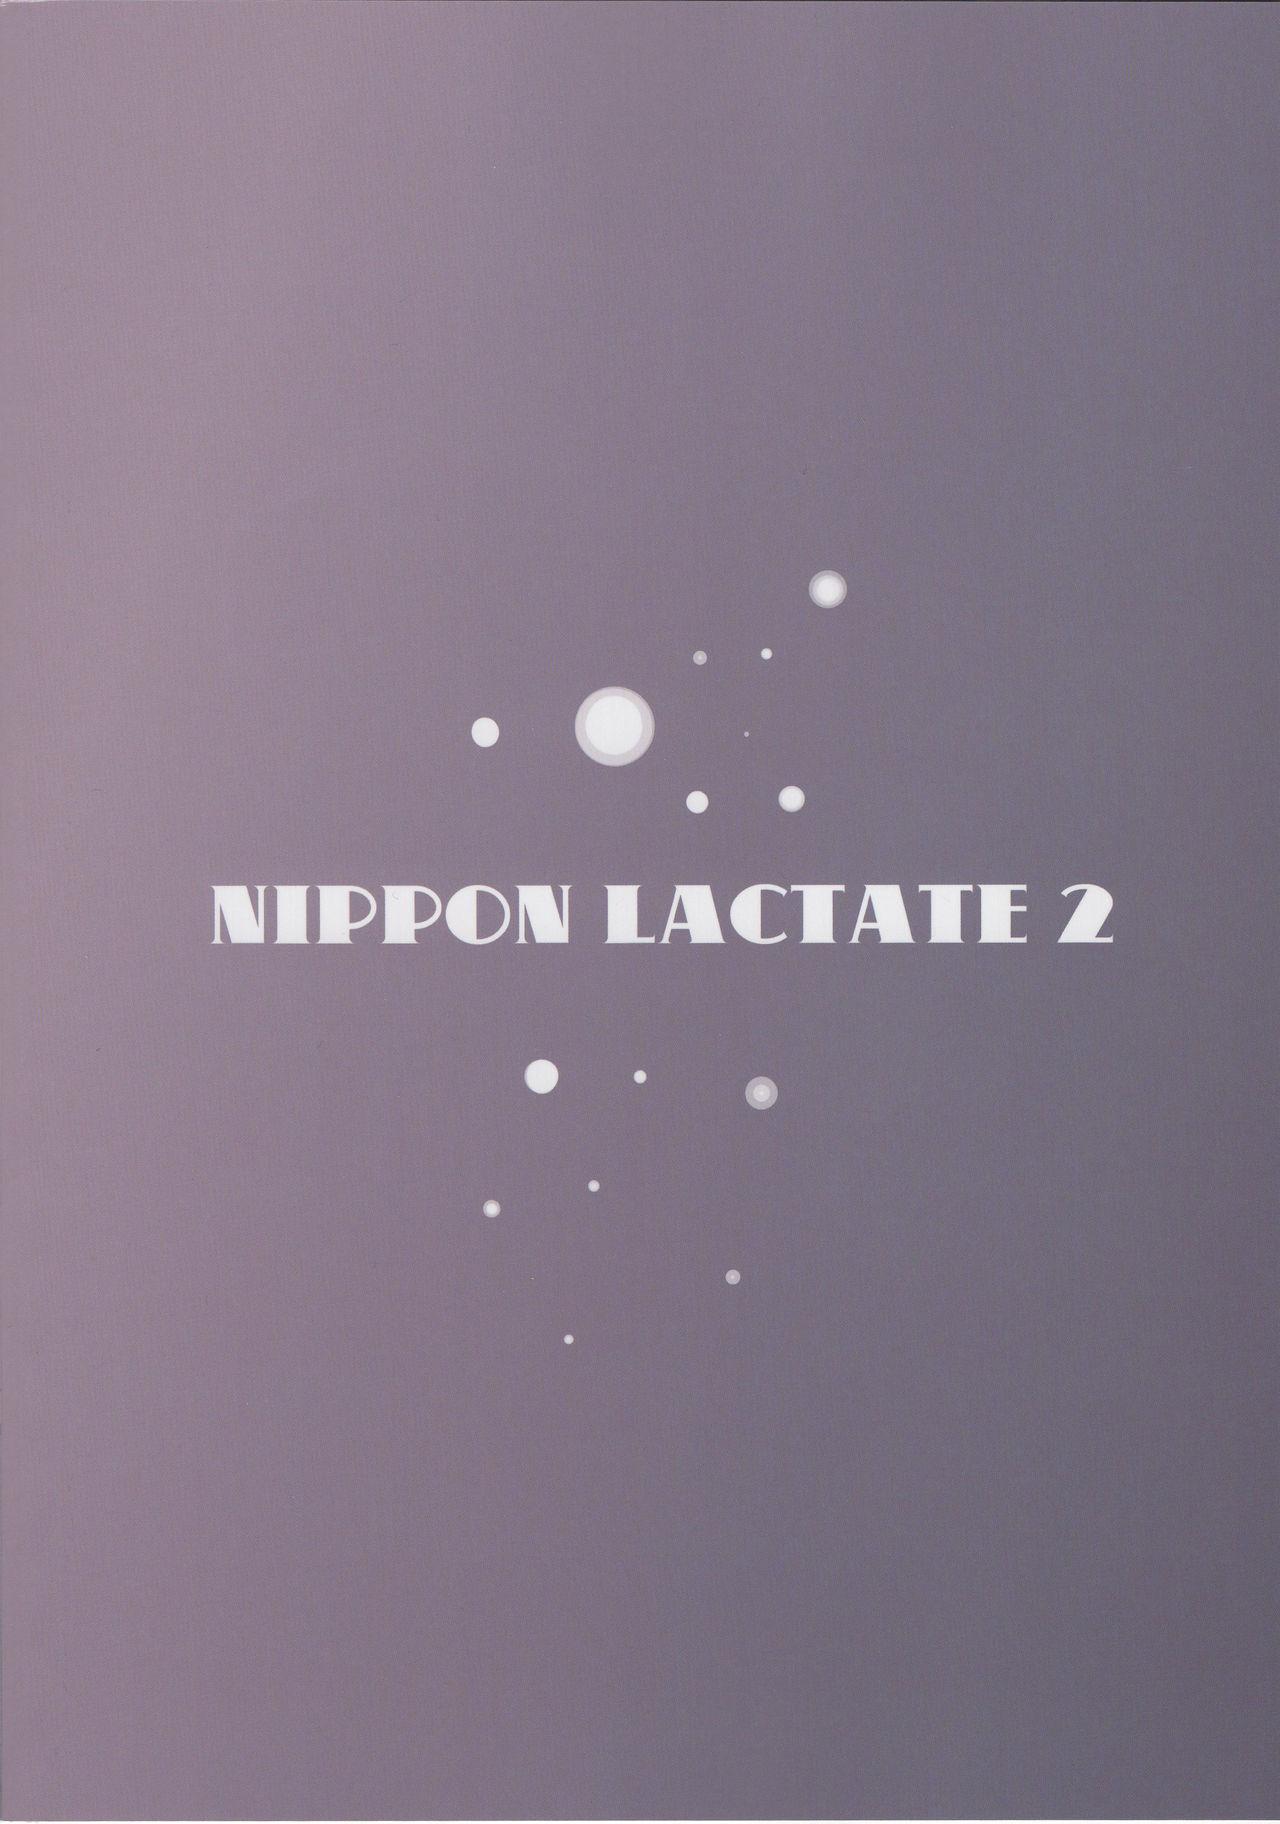 NIPPON LACTATE II 25